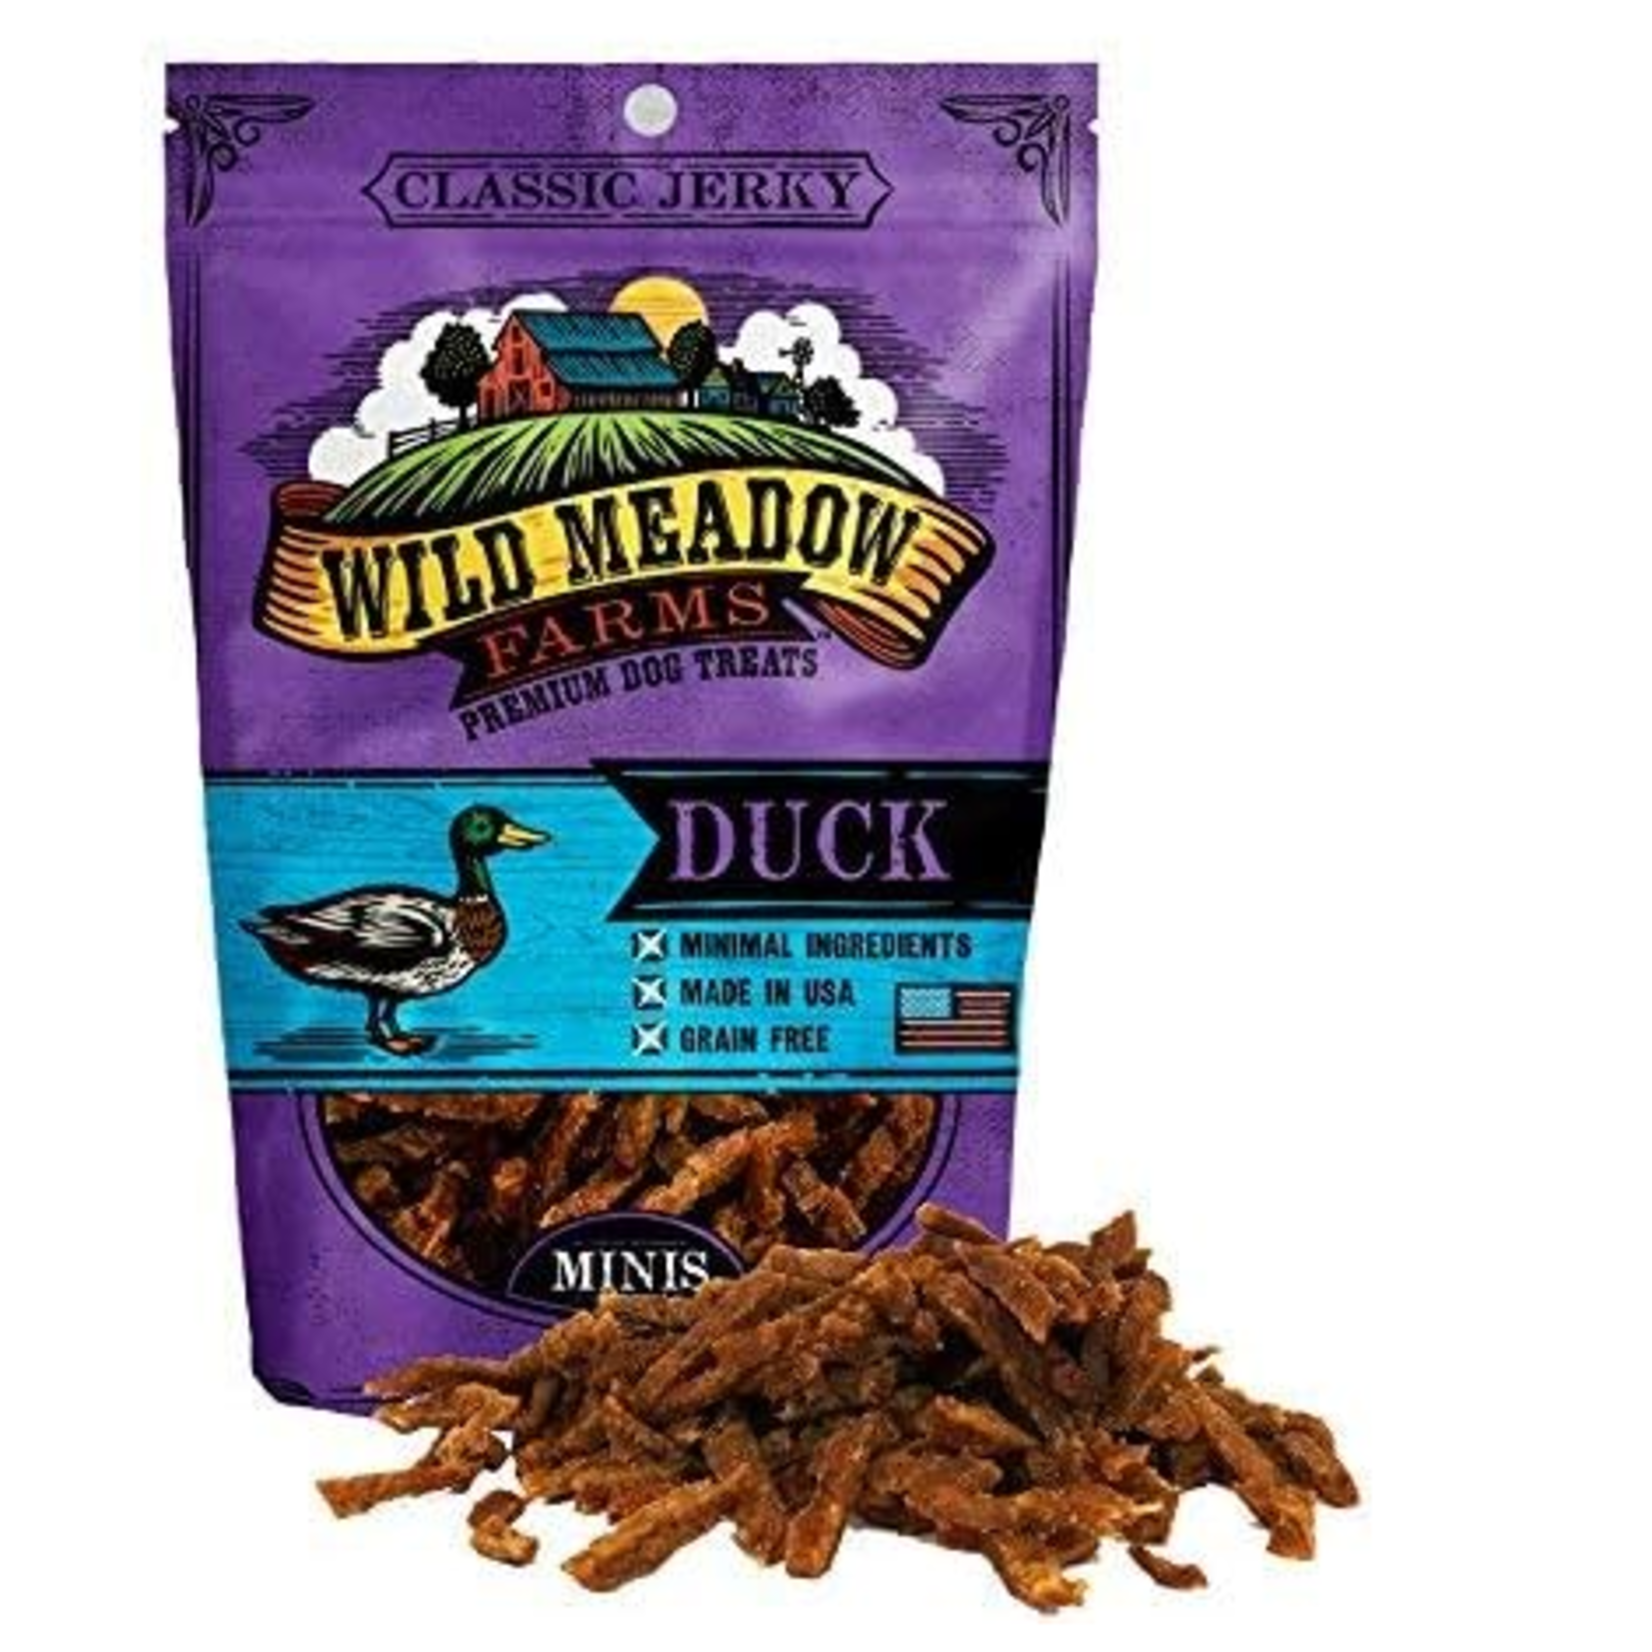 Wild Meadow Farms 3.5 oz. - Duck - Classic Minis - Semi-Soft Dog Treat - Wild Meadow Farms